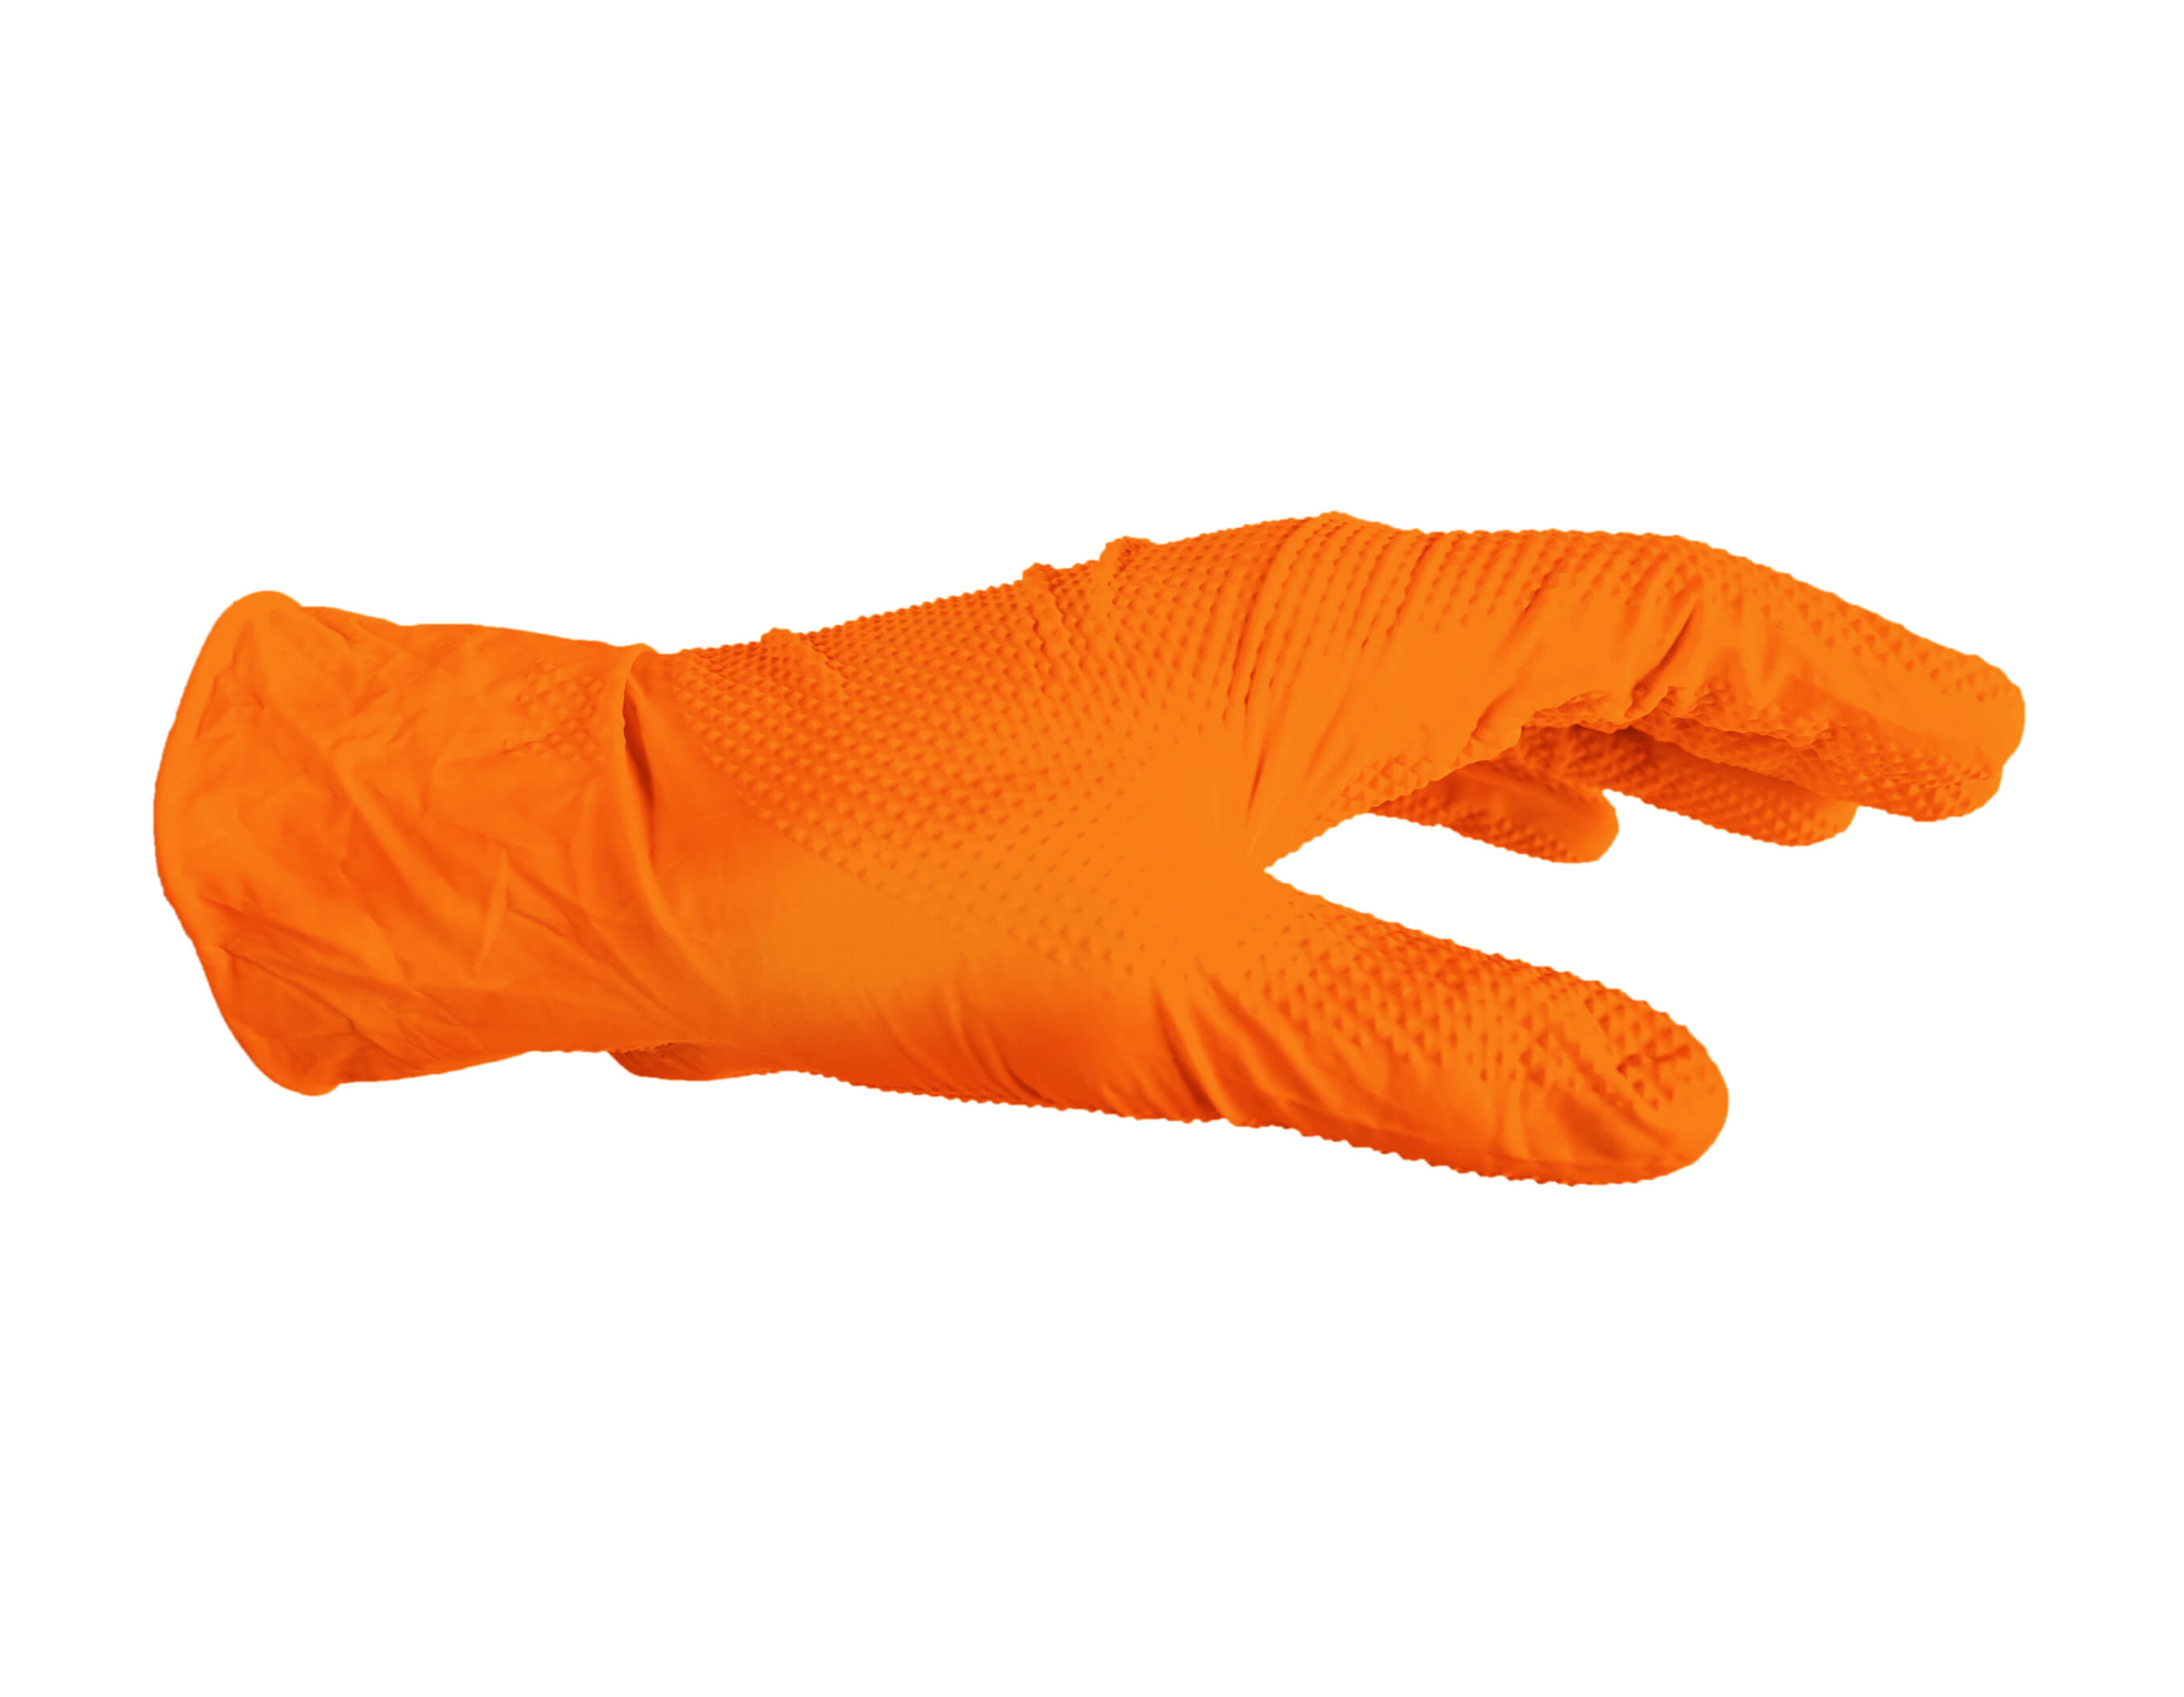 Nouveau produit : Gants jetables nitrile Grip orange haute résistance -  Würth